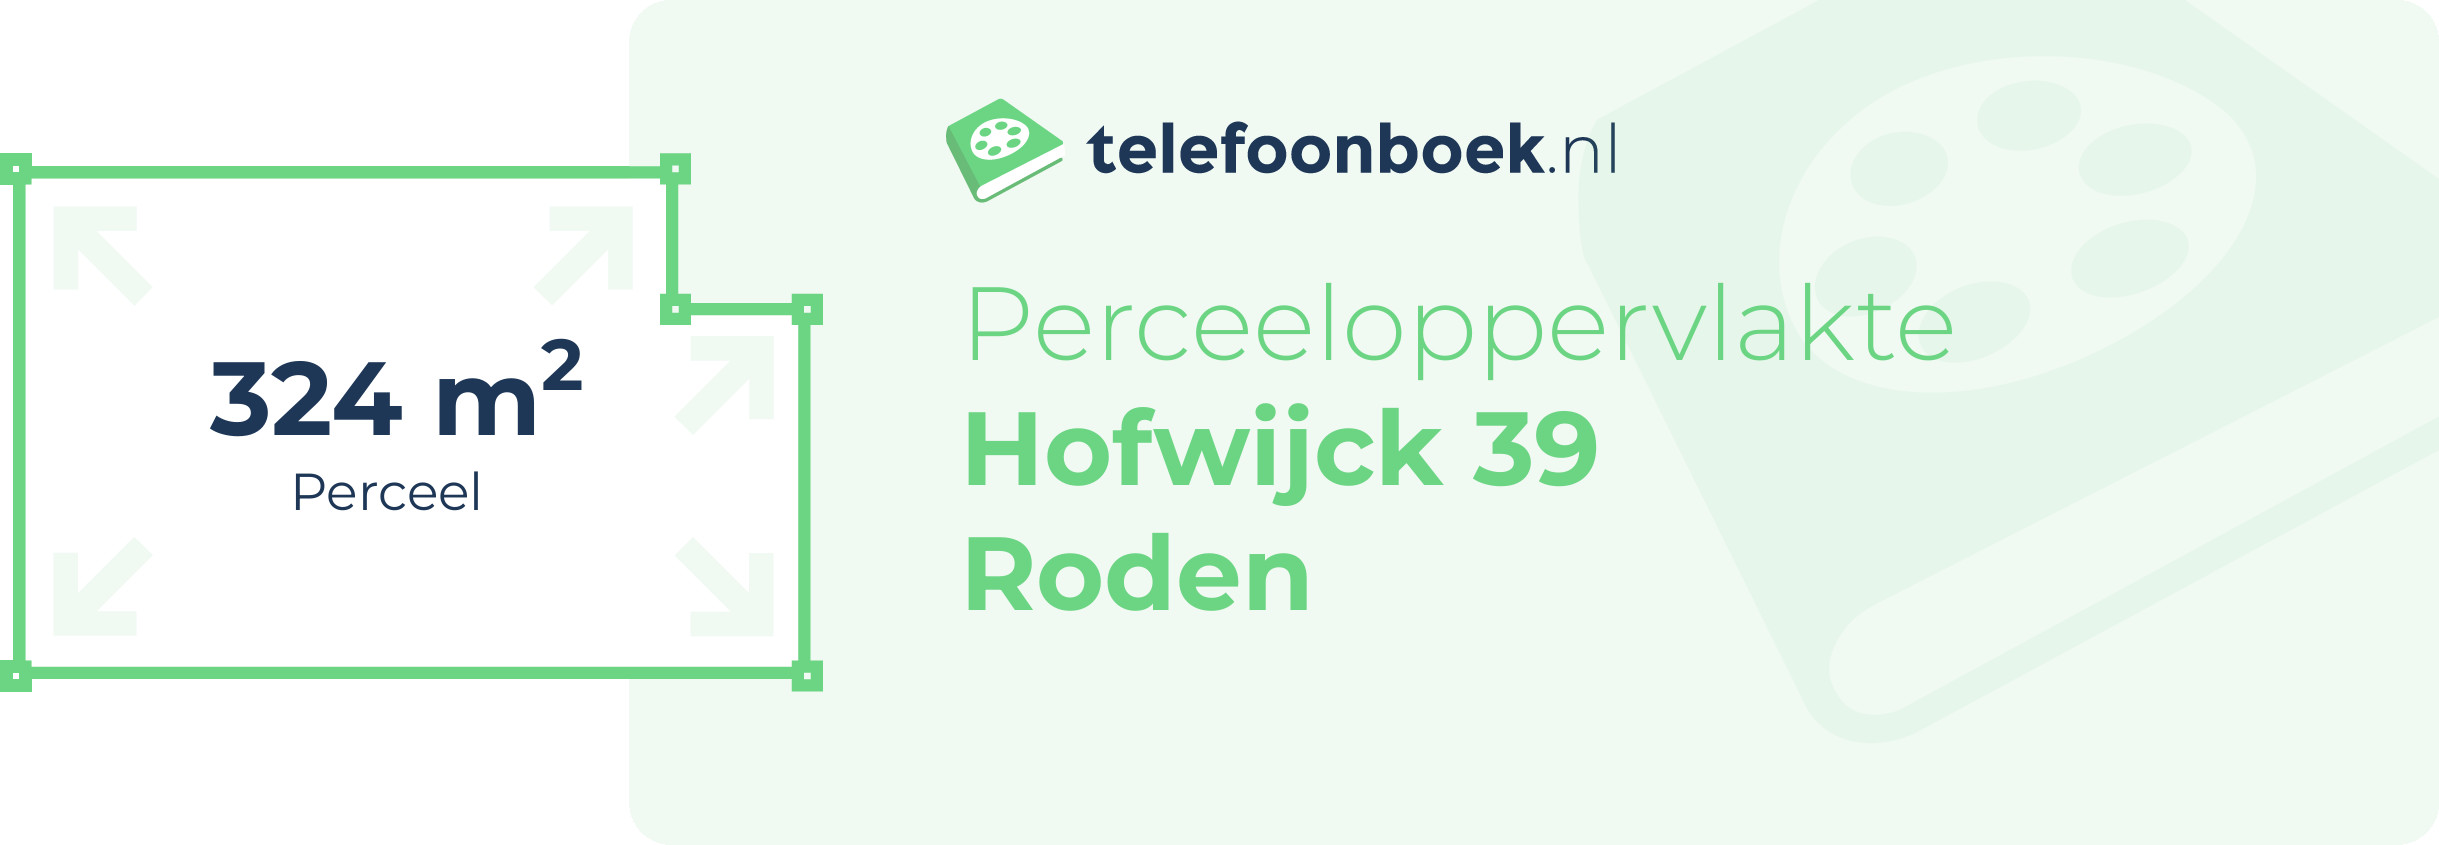 Perceeloppervlakte Hofwijck 39 Roden